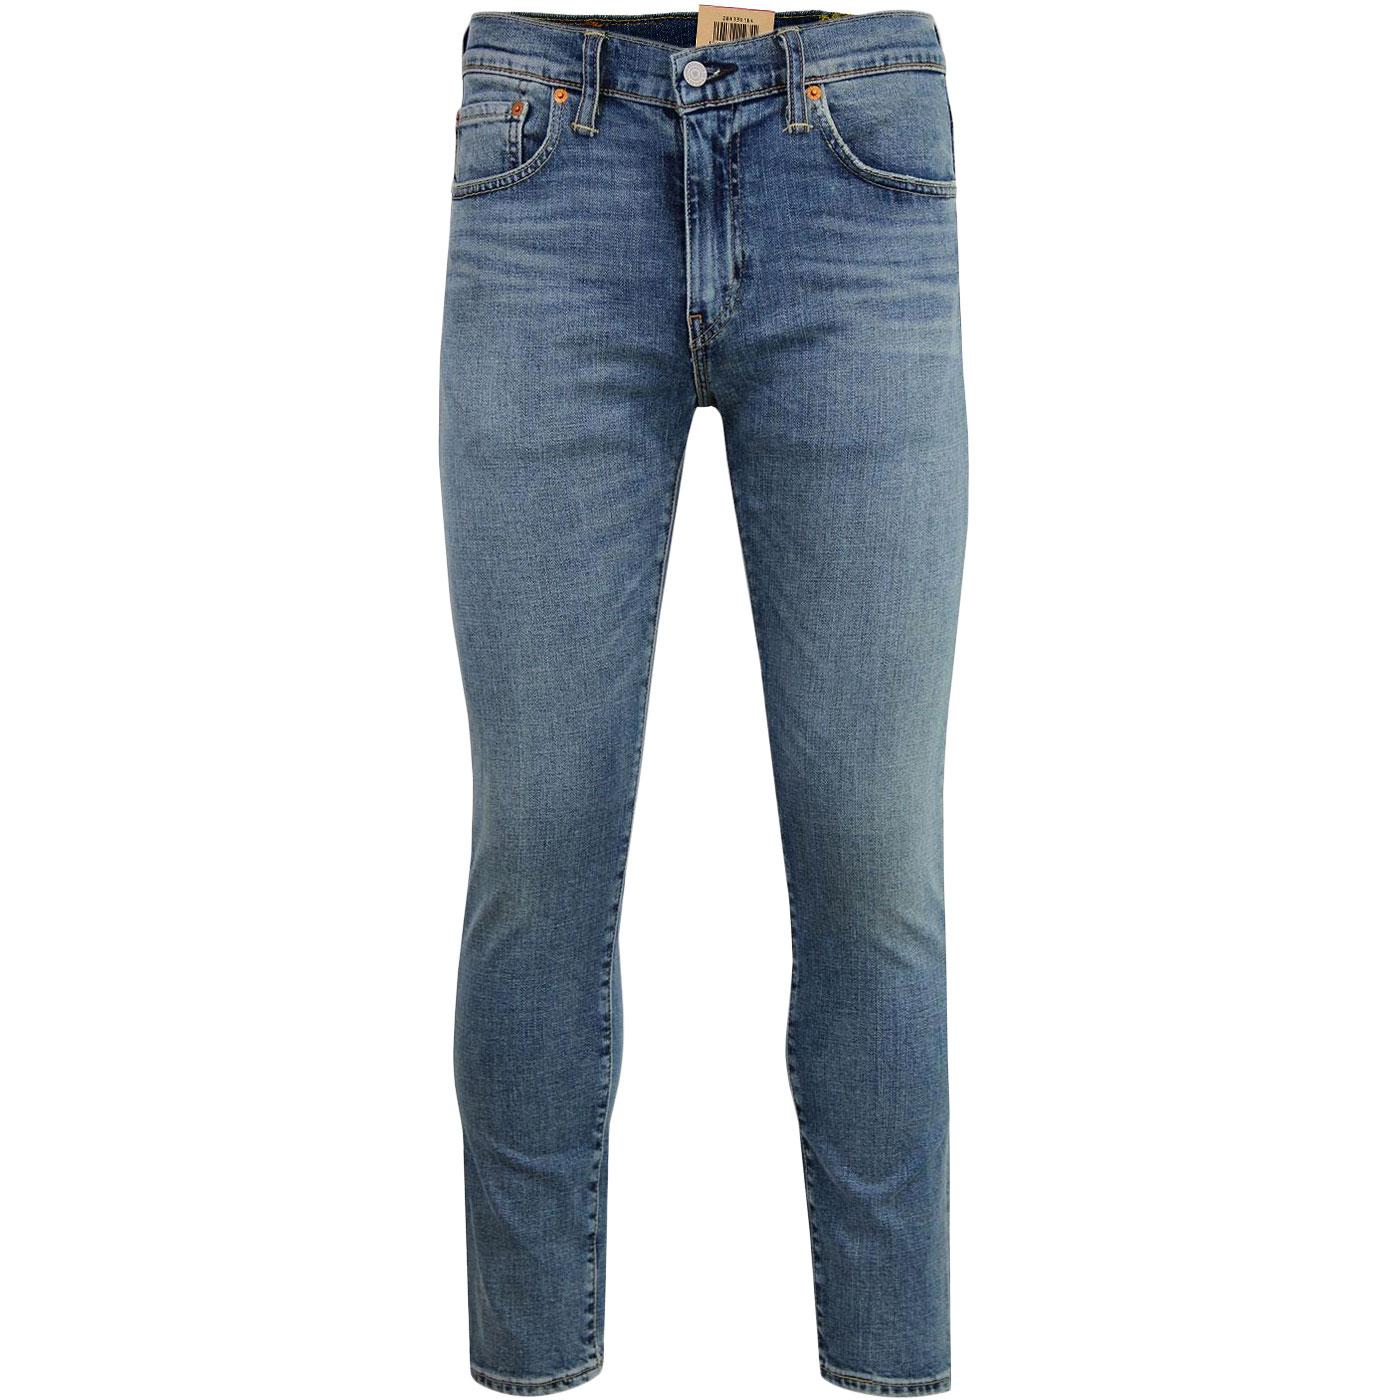 LEVI'S 512 Men's Slim Taper Fit Denim Jeans in RIVERCREEK